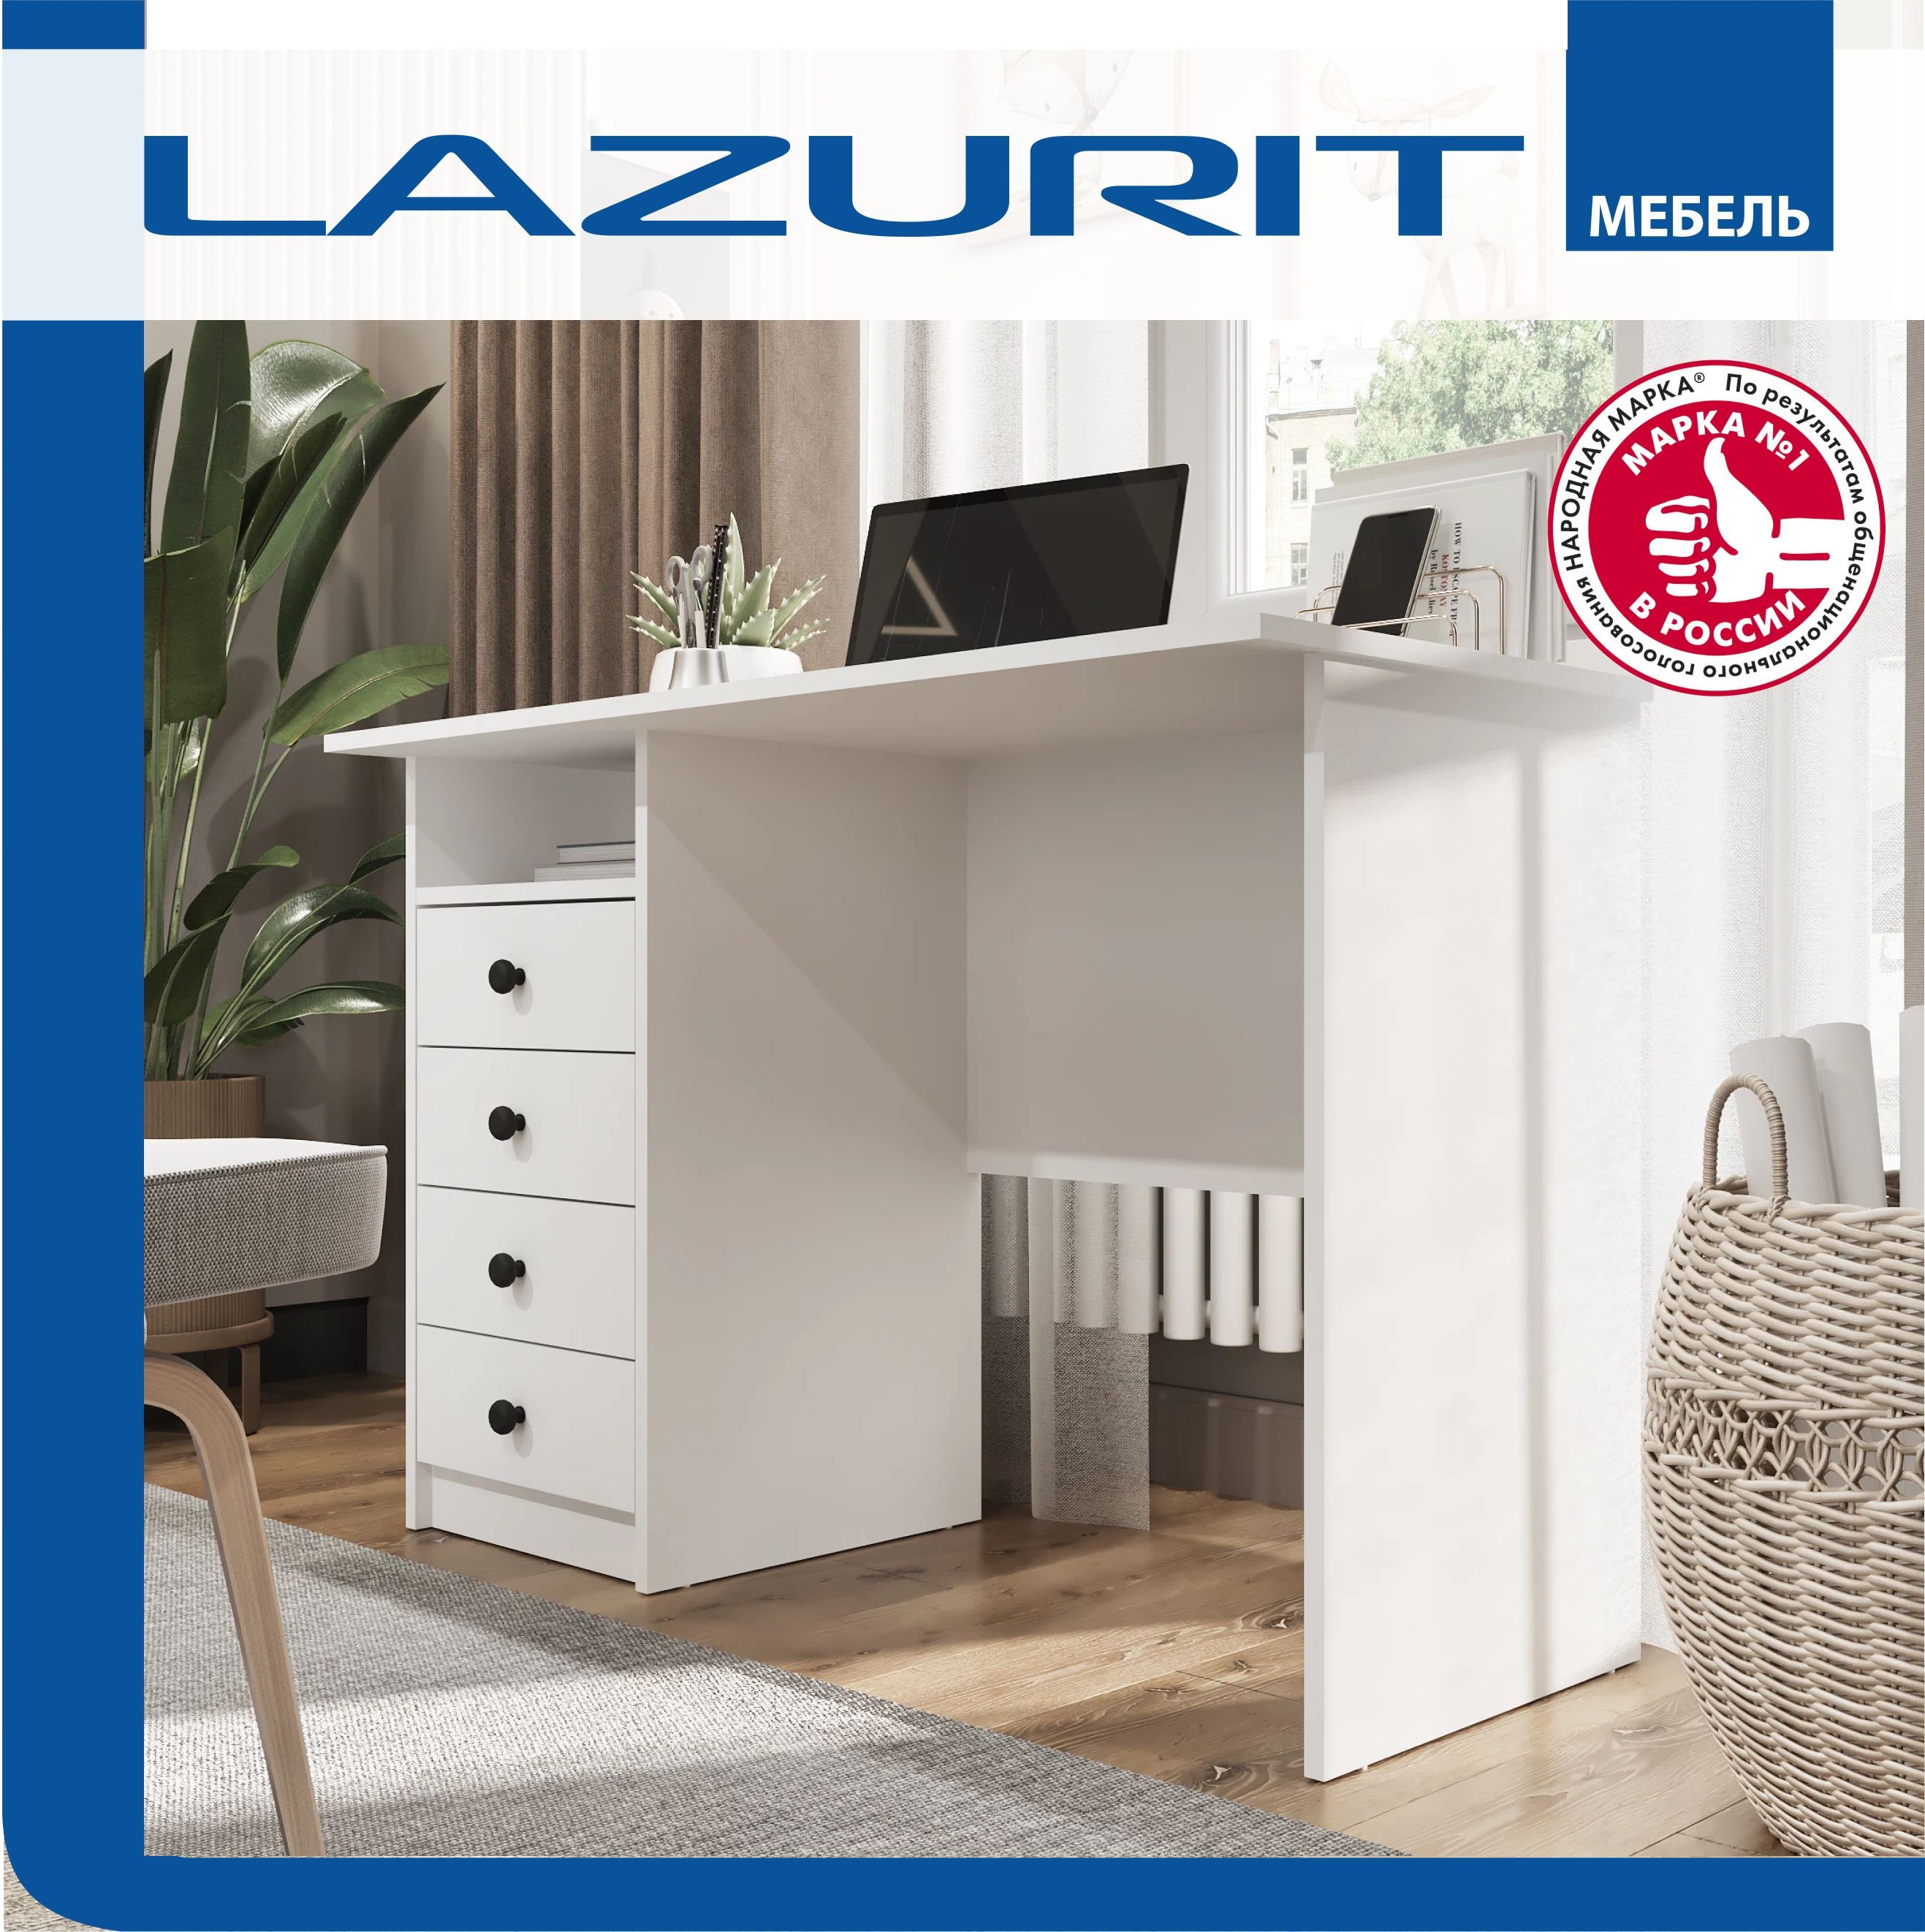 Из чего делают мебель: обзор материалов для корпусной мебели - Lazurit